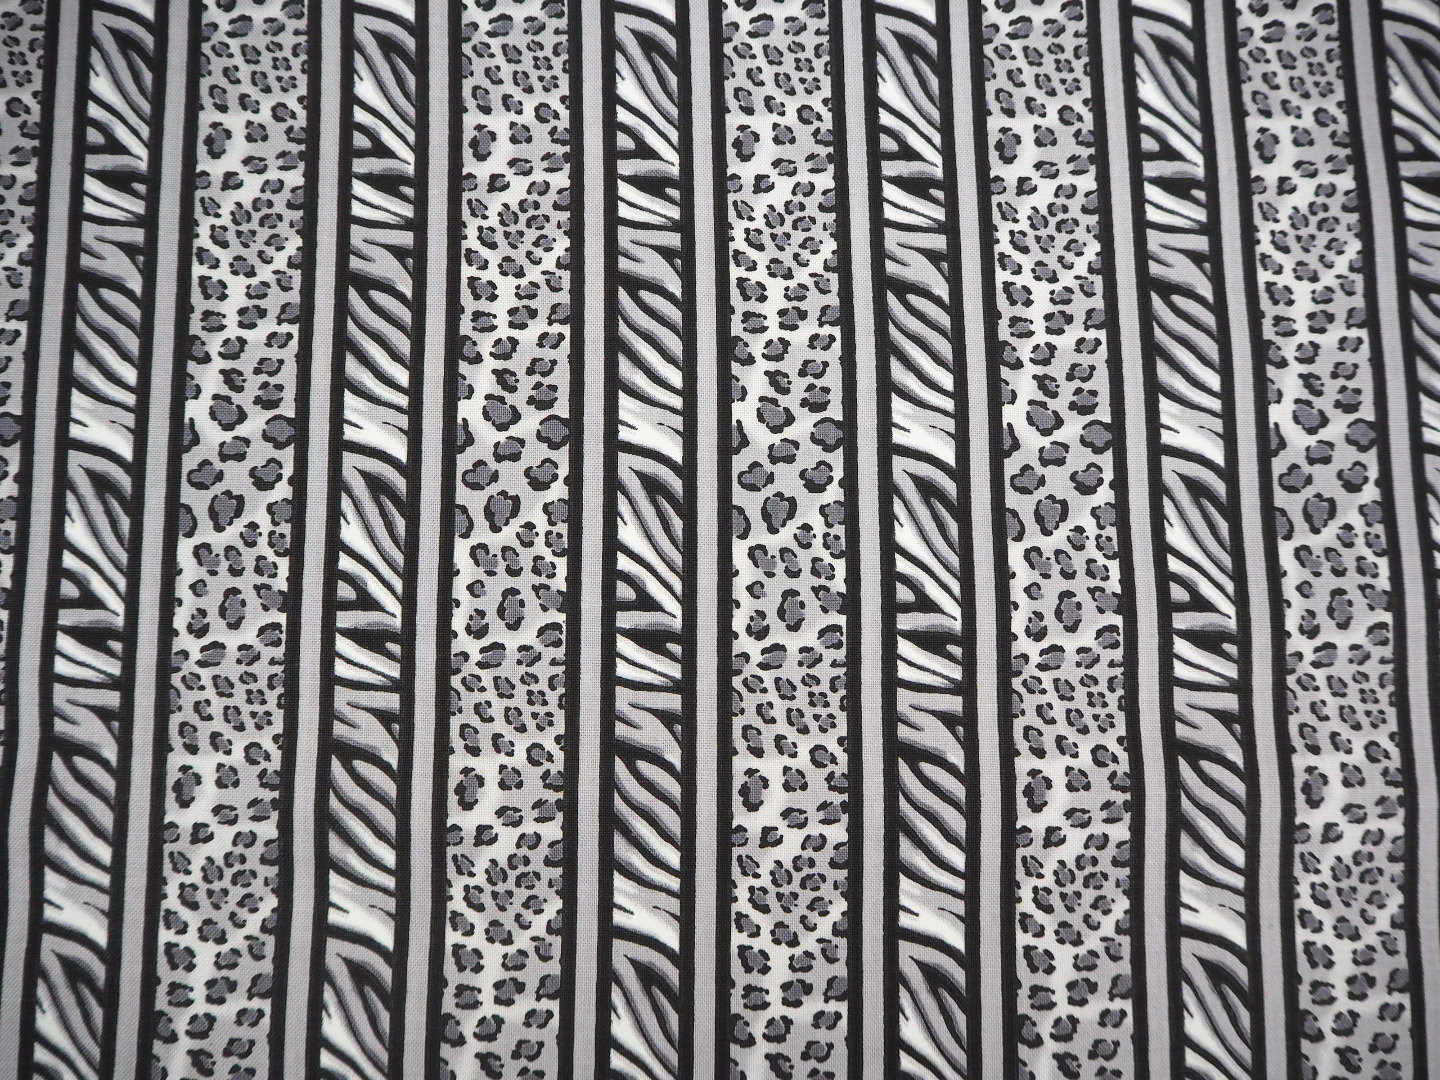 Animalprint Glam Girl Patchwork Stoff Patchworkstoff Meterware Leomuster Streifen schwarz weiß grau 2